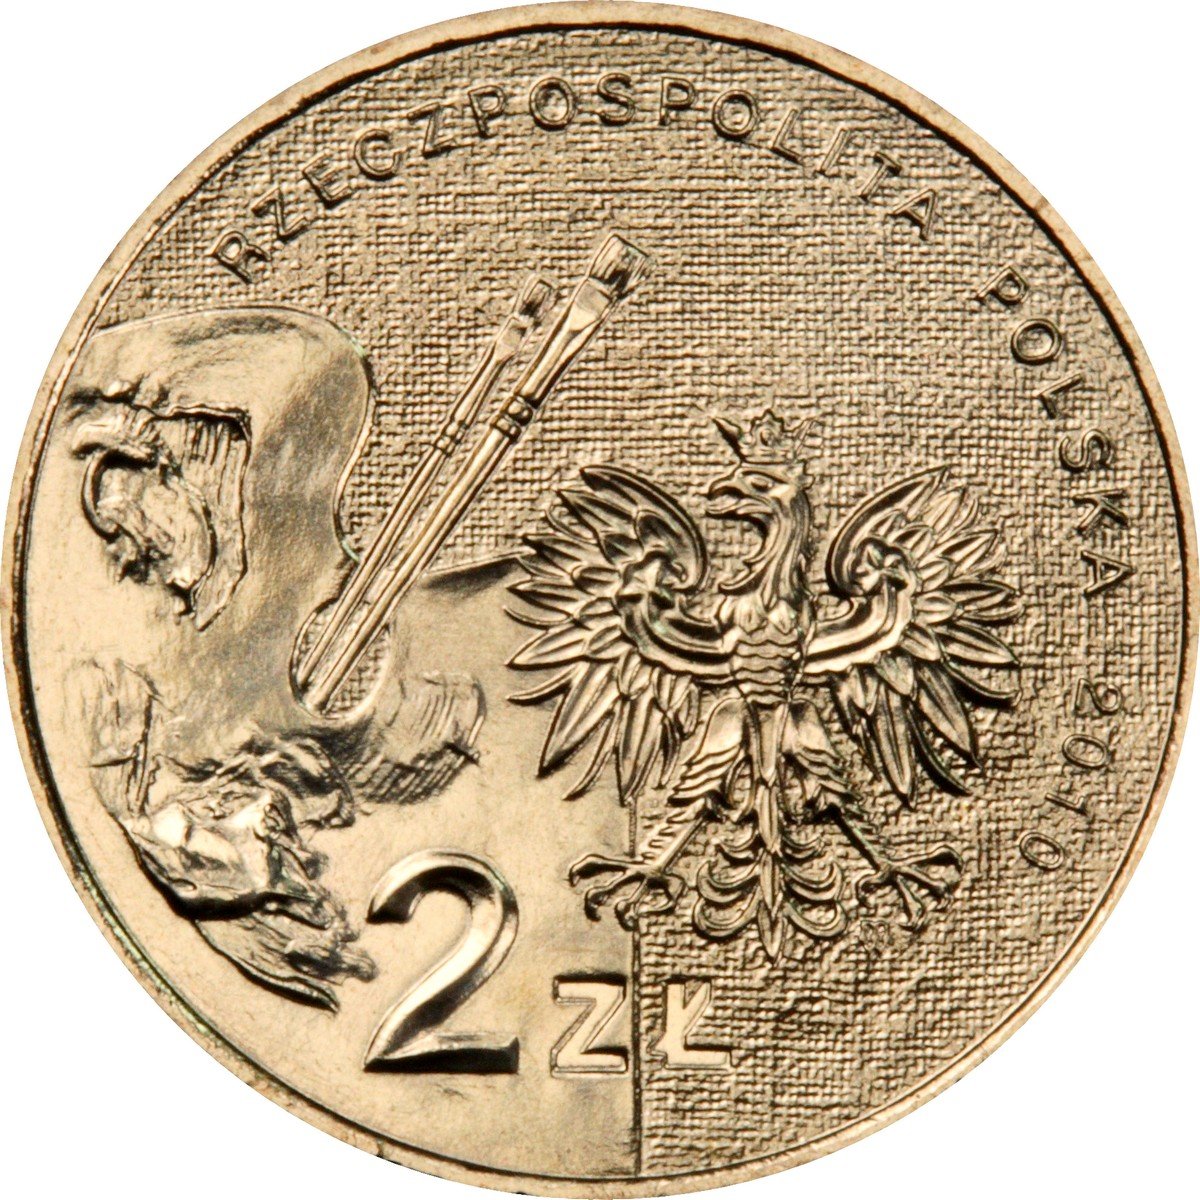 2zl-artur-grottger-1837-1867-awers-monety